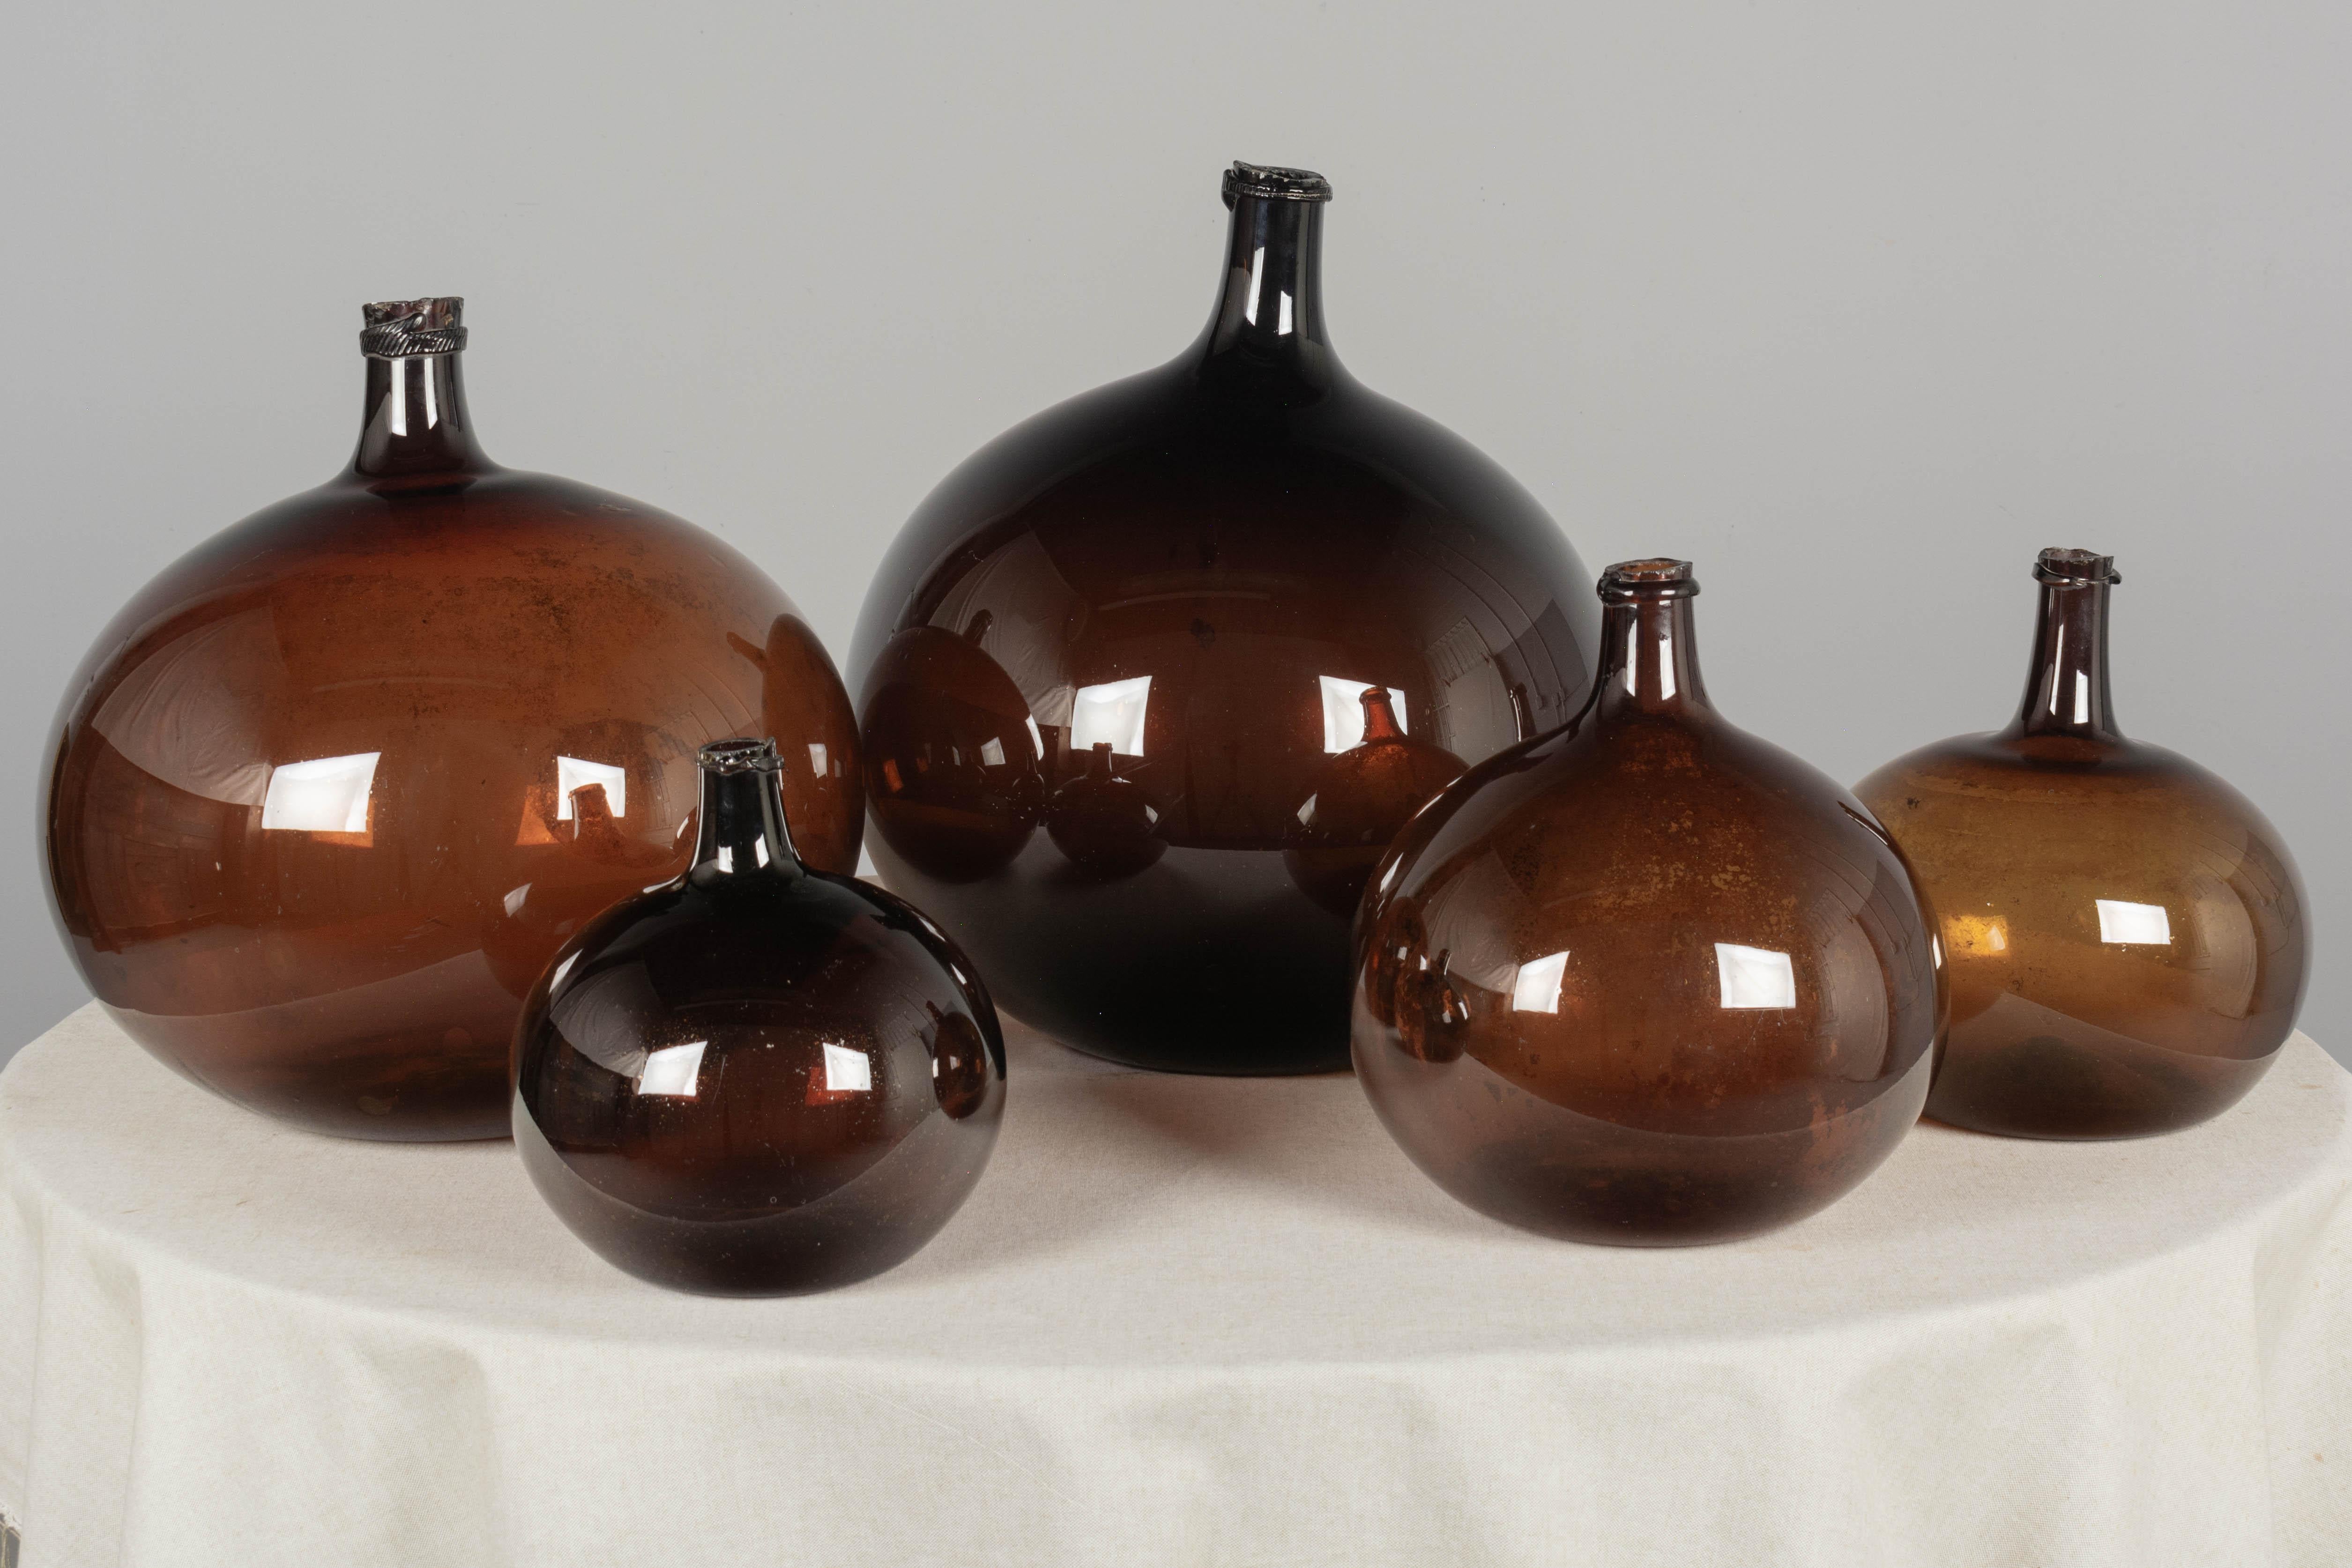 Un ensemble de cinq bouteilles de forme globulaire en verre ambré du 19e siècle avec des bulles d'air typiques du verre soufflé à la main. Circa 1850-1860
Dimensions (de gauche à droite) : 
18 